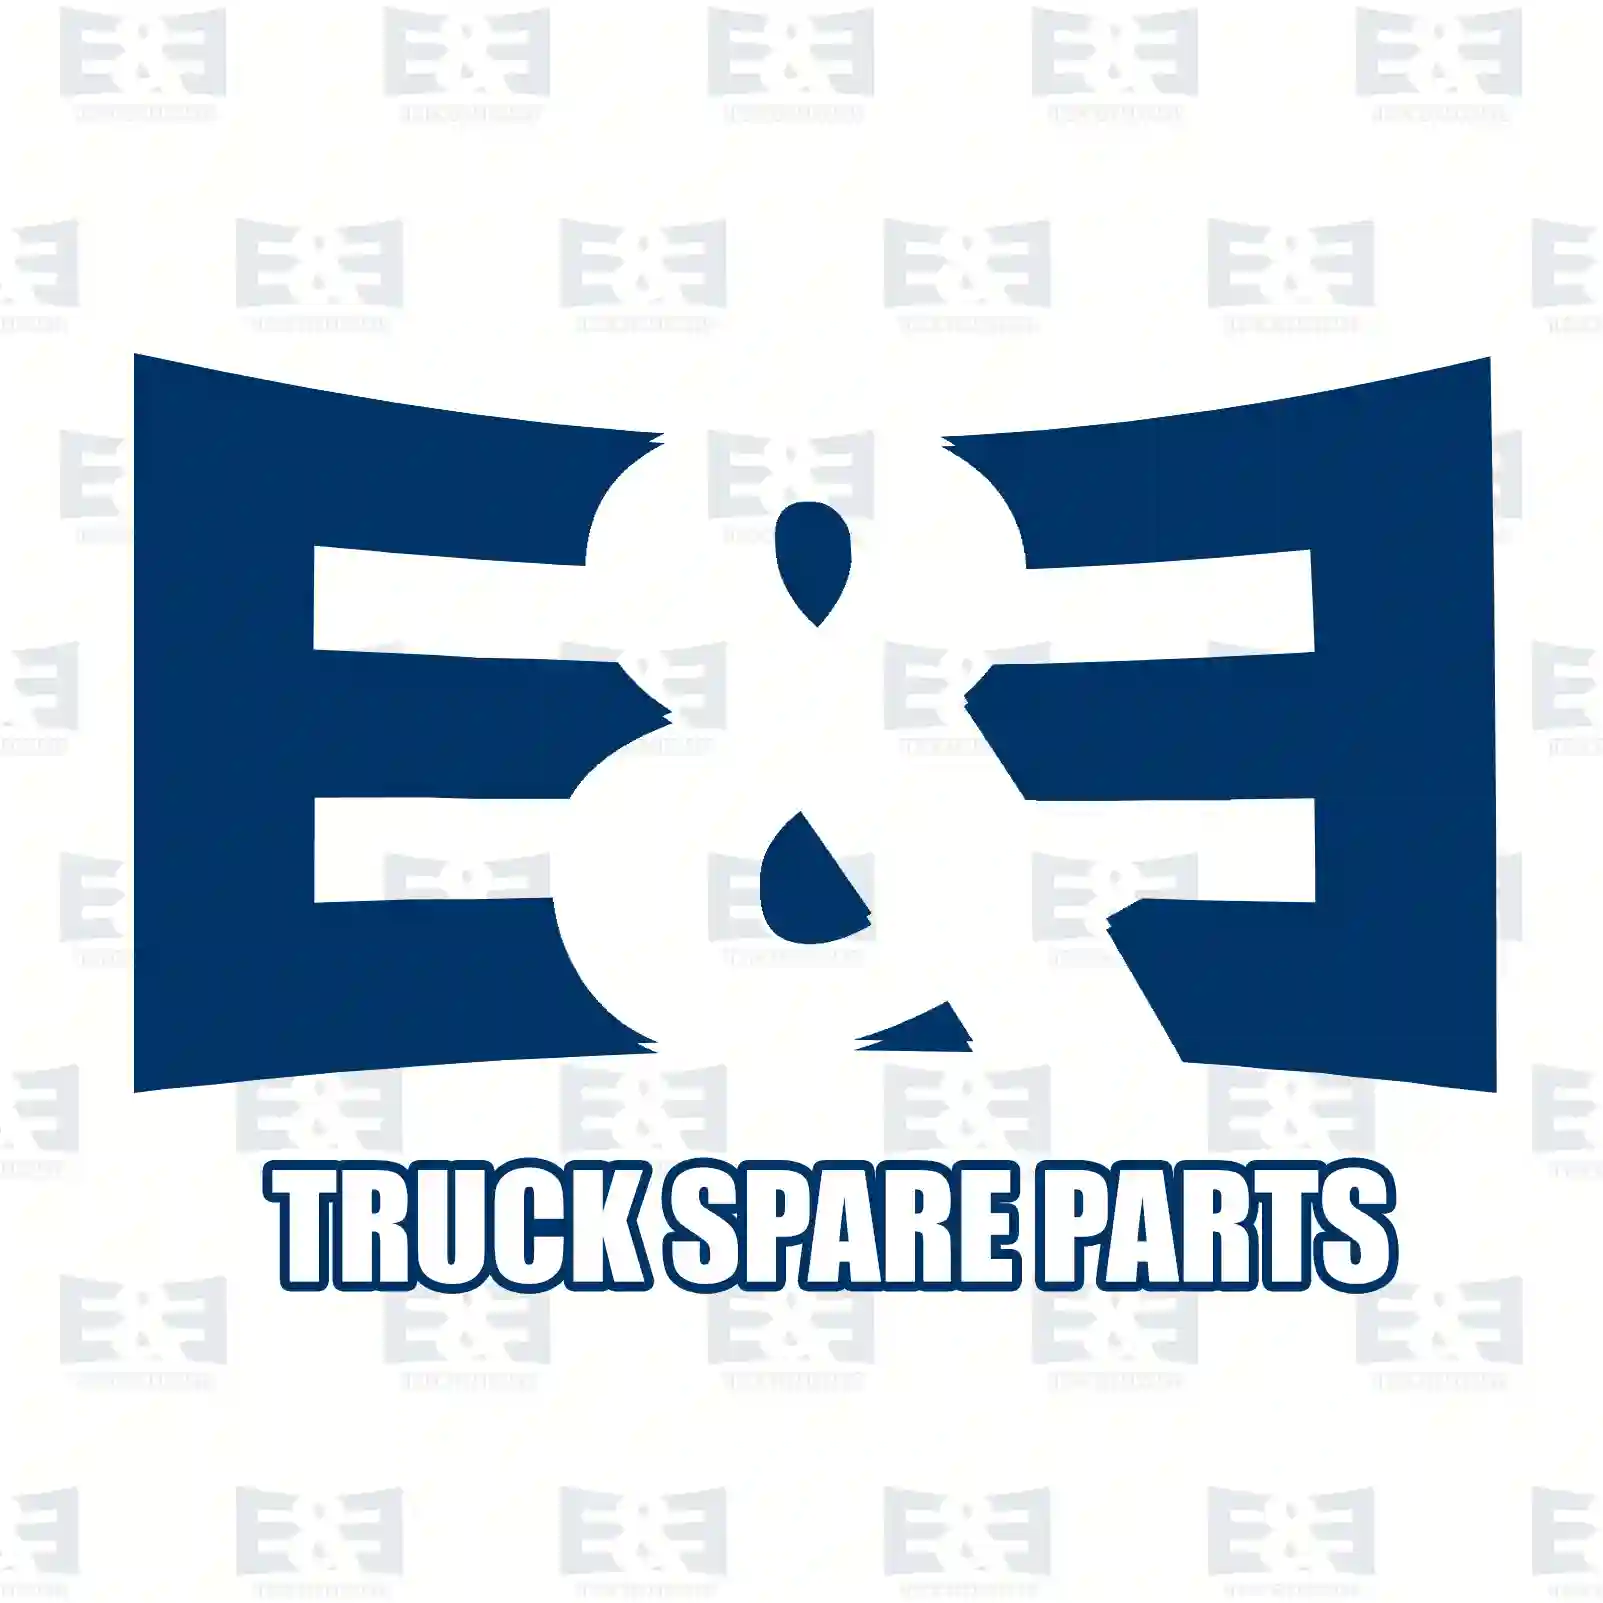 3/2-way valve, 2E2279456, 500356849, 81521856060, 81998041230 ||  2E2279456 E&E Truck Spare Parts | Truck Spare Parts, Auotomotive Spare Parts 3/2-way valve, 2E2279456, 500356849, 81521856060, 81998041230 ||  2E2279456 E&E Truck Spare Parts | Truck Spare Parts, Auotomotive Spare Parts